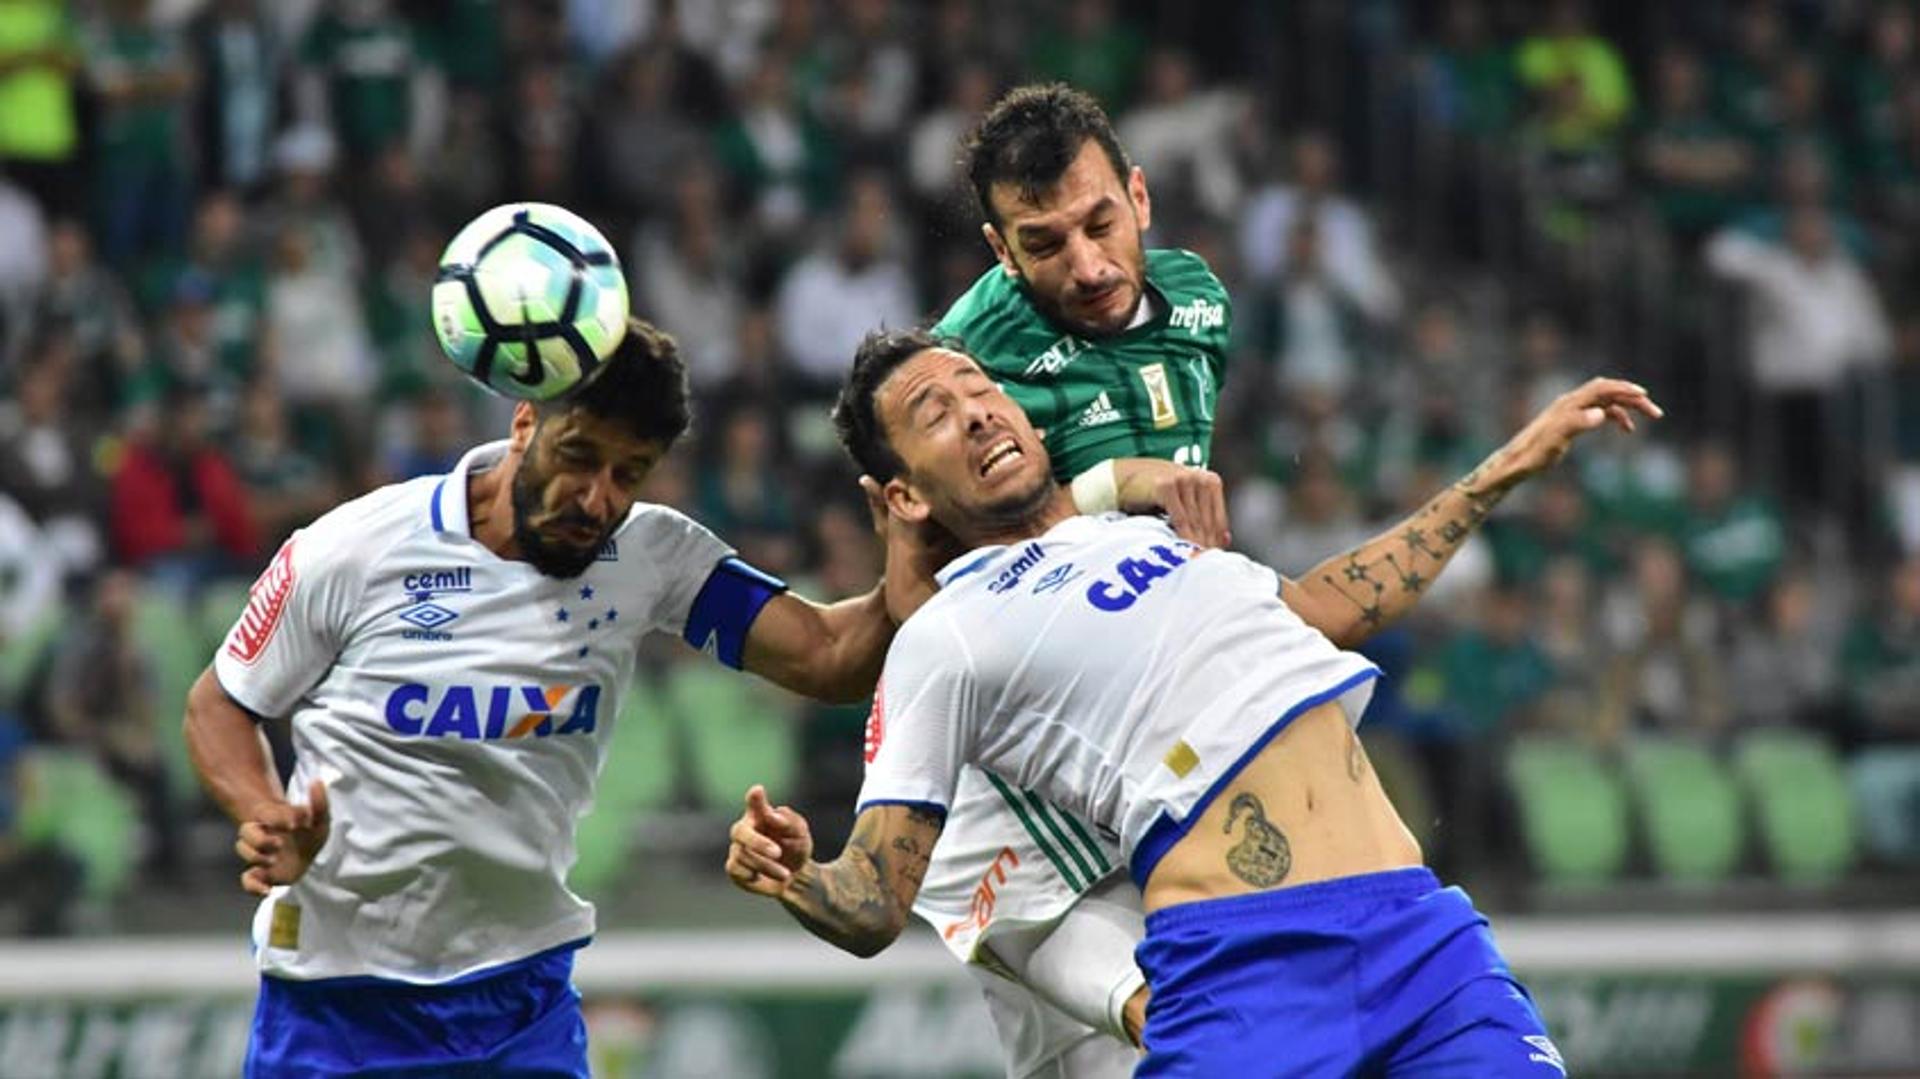 GALERIA: Veja em imagens como foi o jogão entre Palmeiras e Cruzeiro